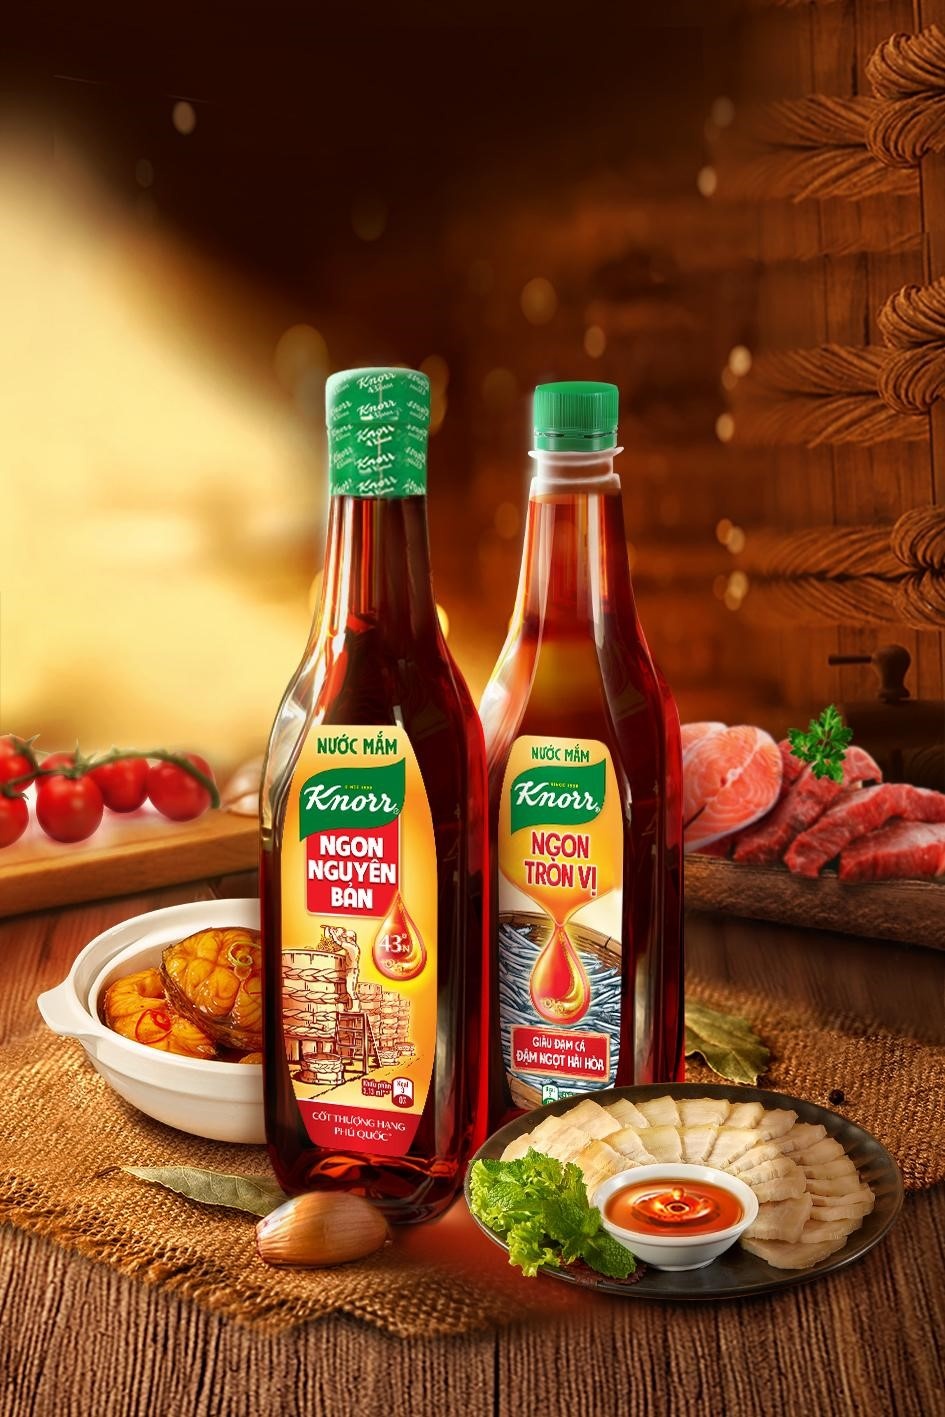 Knorr giới thiệu 2 dòng sản phẩm nước mắm, phù hợp với khẩu vị phần đông người Việt.  - 2_3 - Chọn nước mắm ngon cho bữa ăn ‘hao cơm’